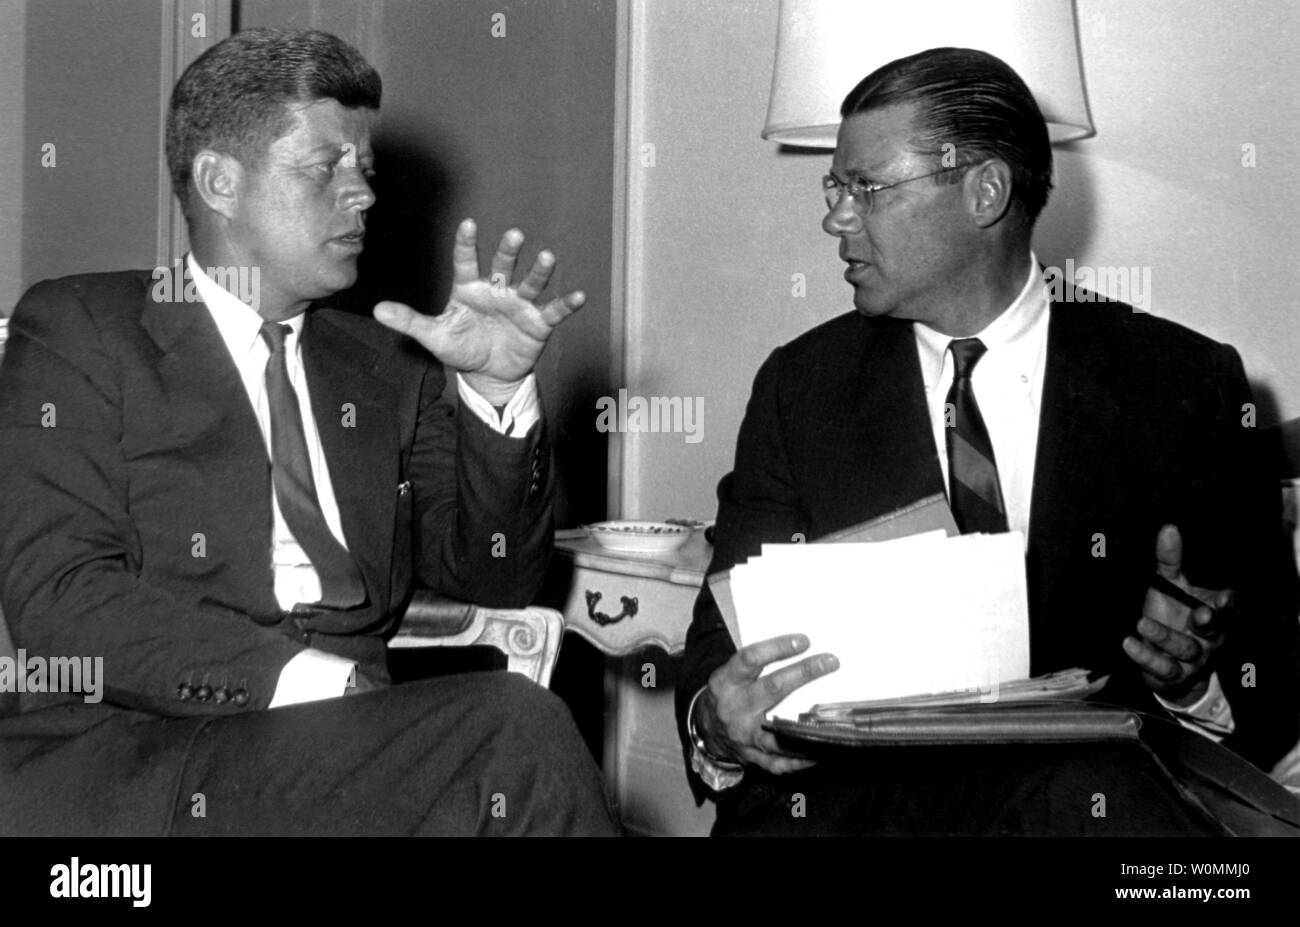 Präsident John F. Kennedy und Verteidigungsminister Robert McNamara werden gesehen in diesem Januar 4, 1961 file Photo im Carlyle Hotel in New York City. An diesem Freitag den 50. Jahrestag der Ermordung von Präsident Kennedy am 22. November 1963. UPI/Dateien Stockfoto